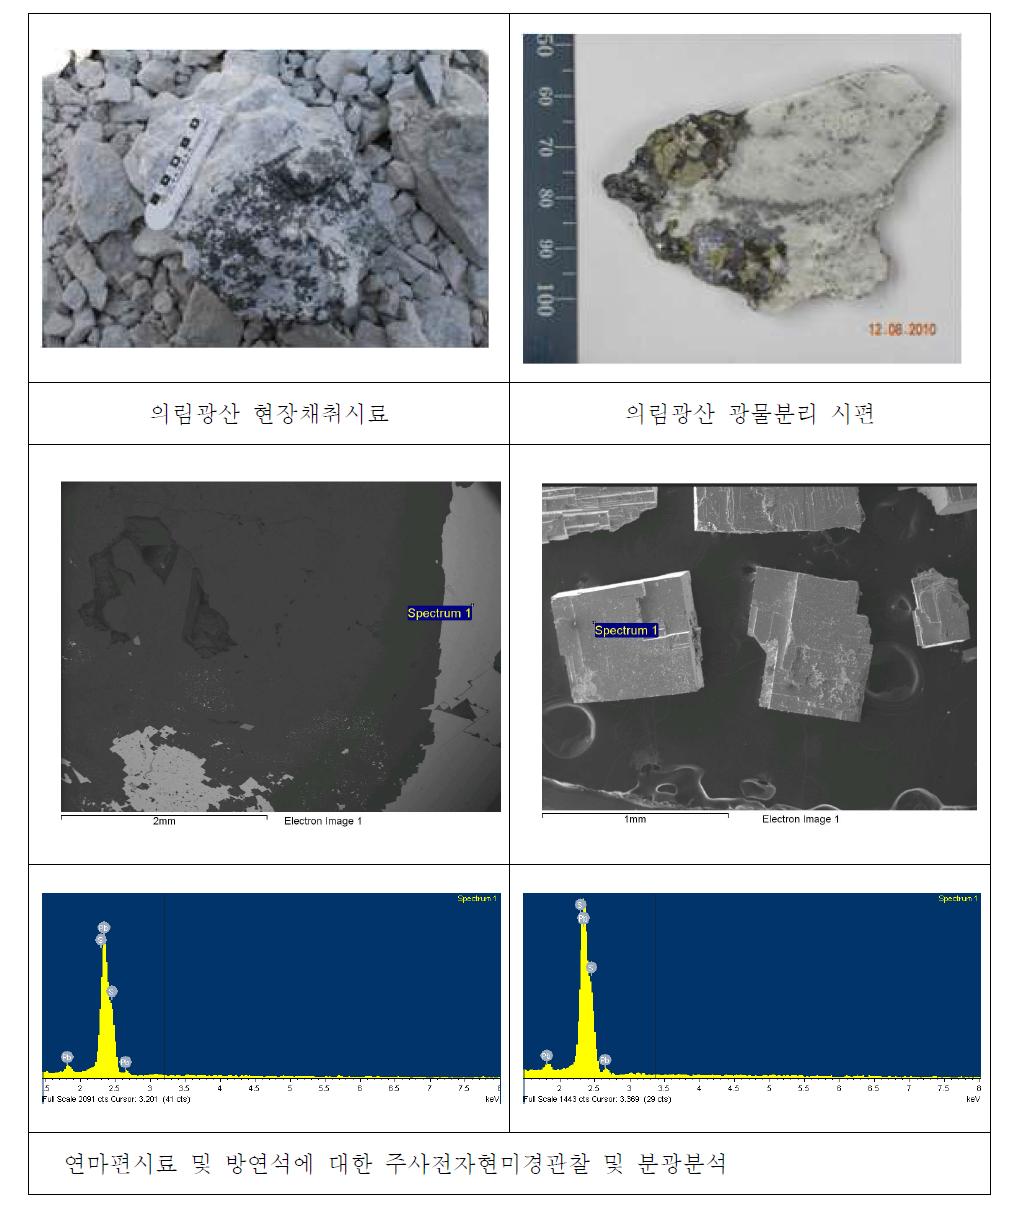 의림광산 광석시료 및 연마편 시료의 주사전자현미경관찰 및 분광분석